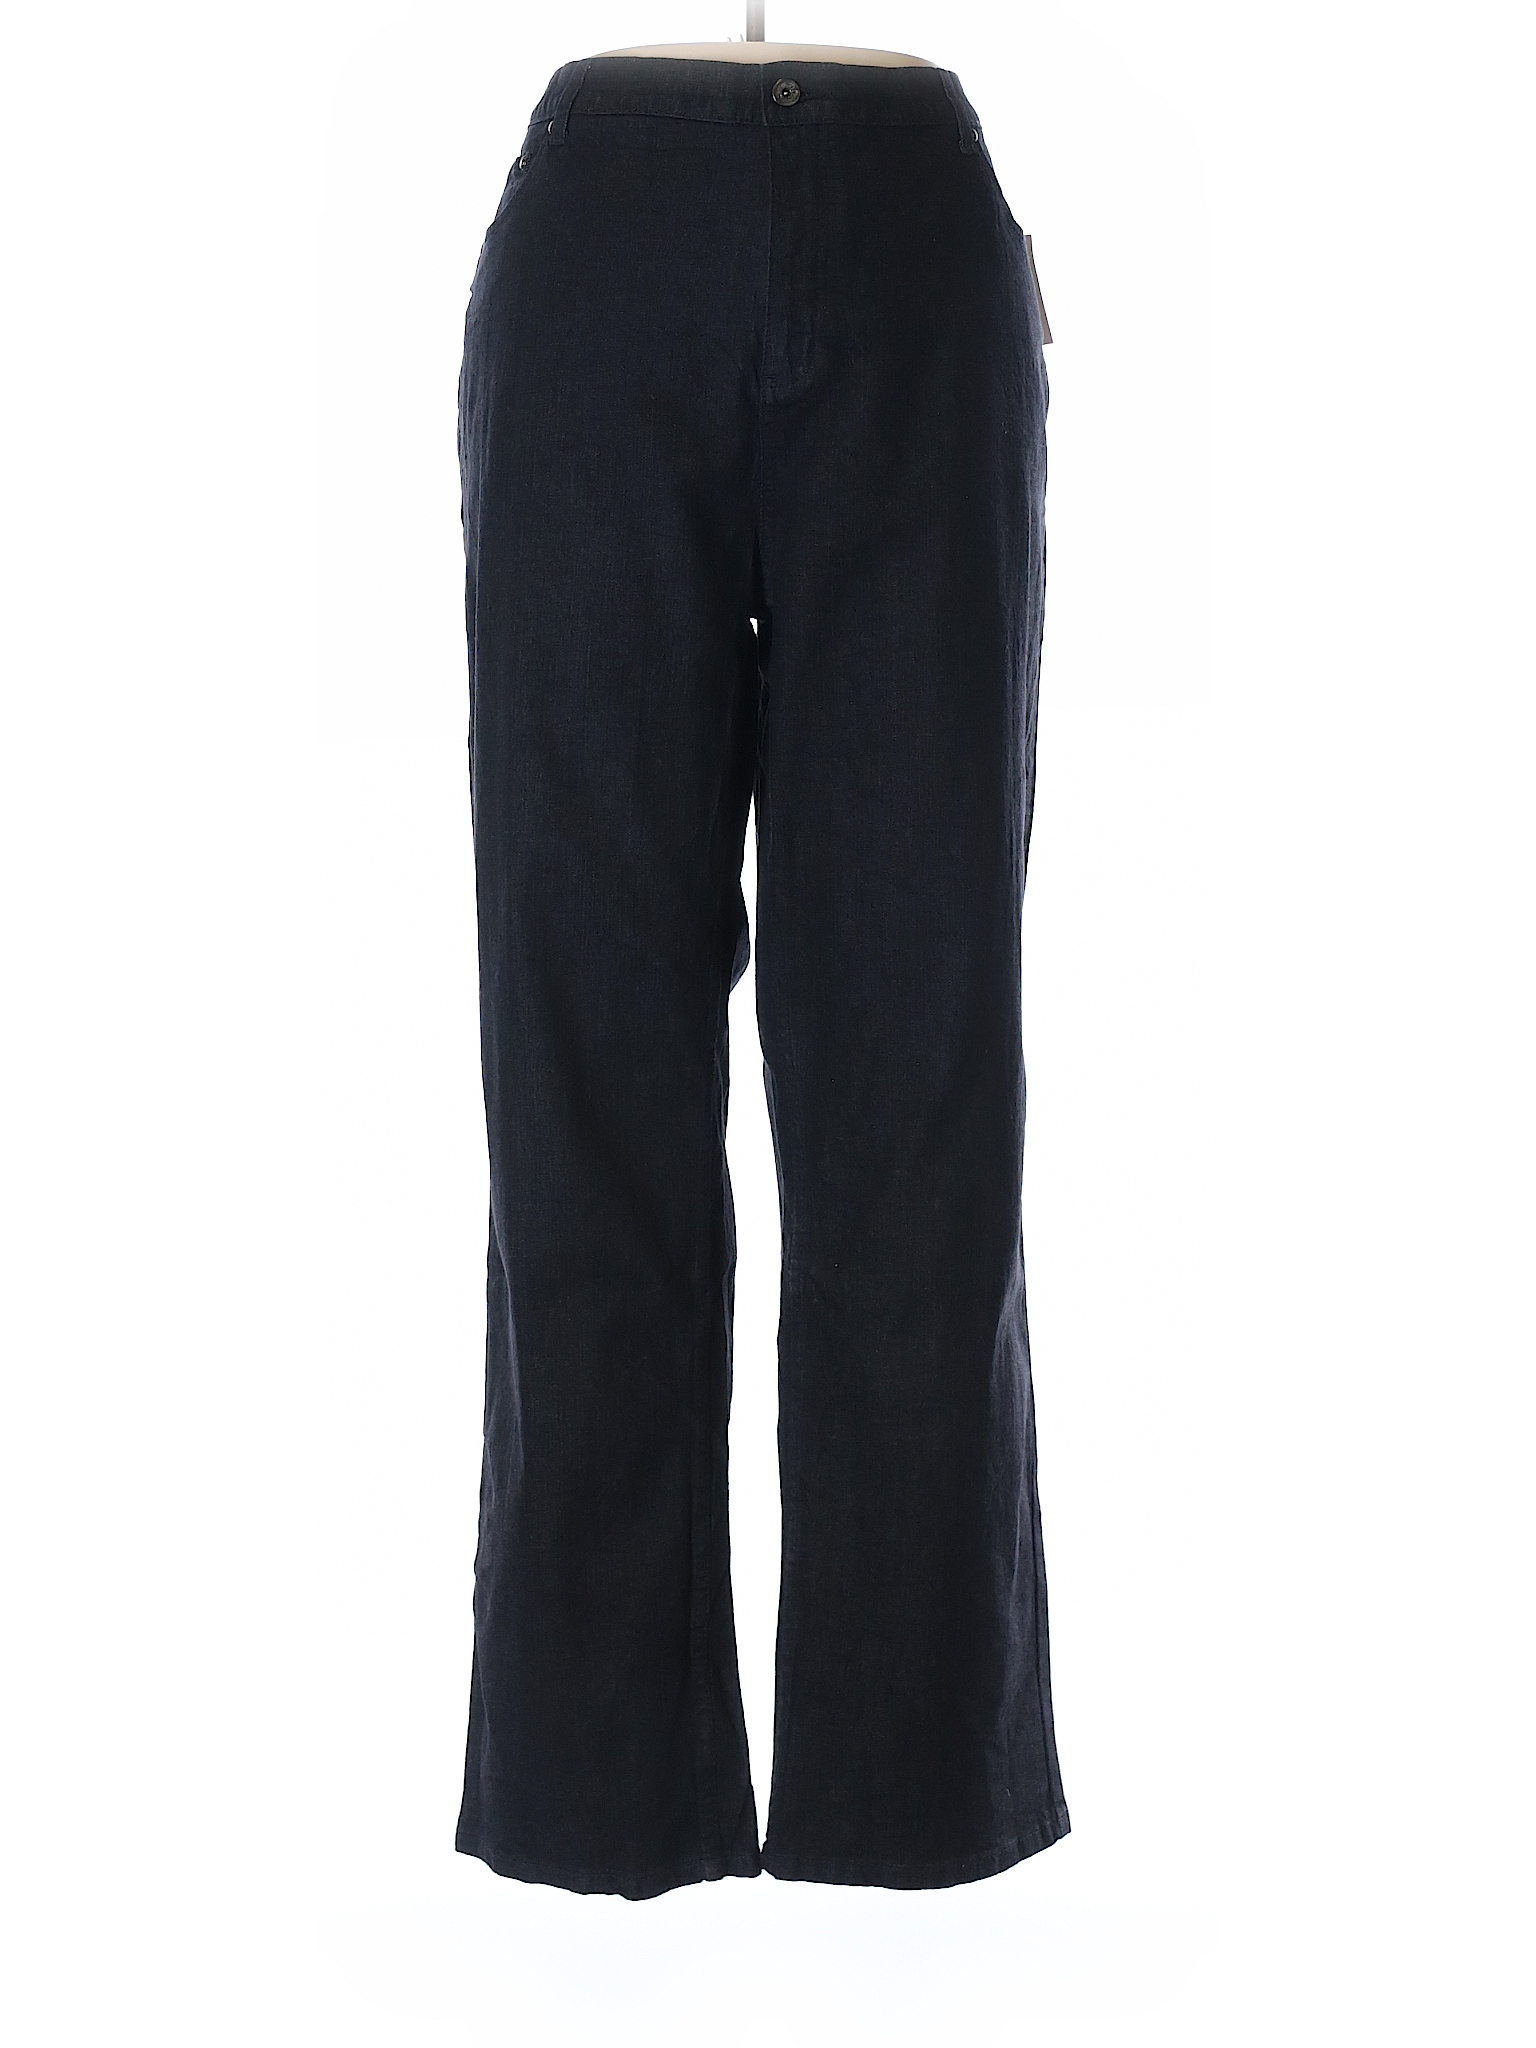 D&Co. Solid Black Jeans Size 20W (Plus) - 58% off | thredUP